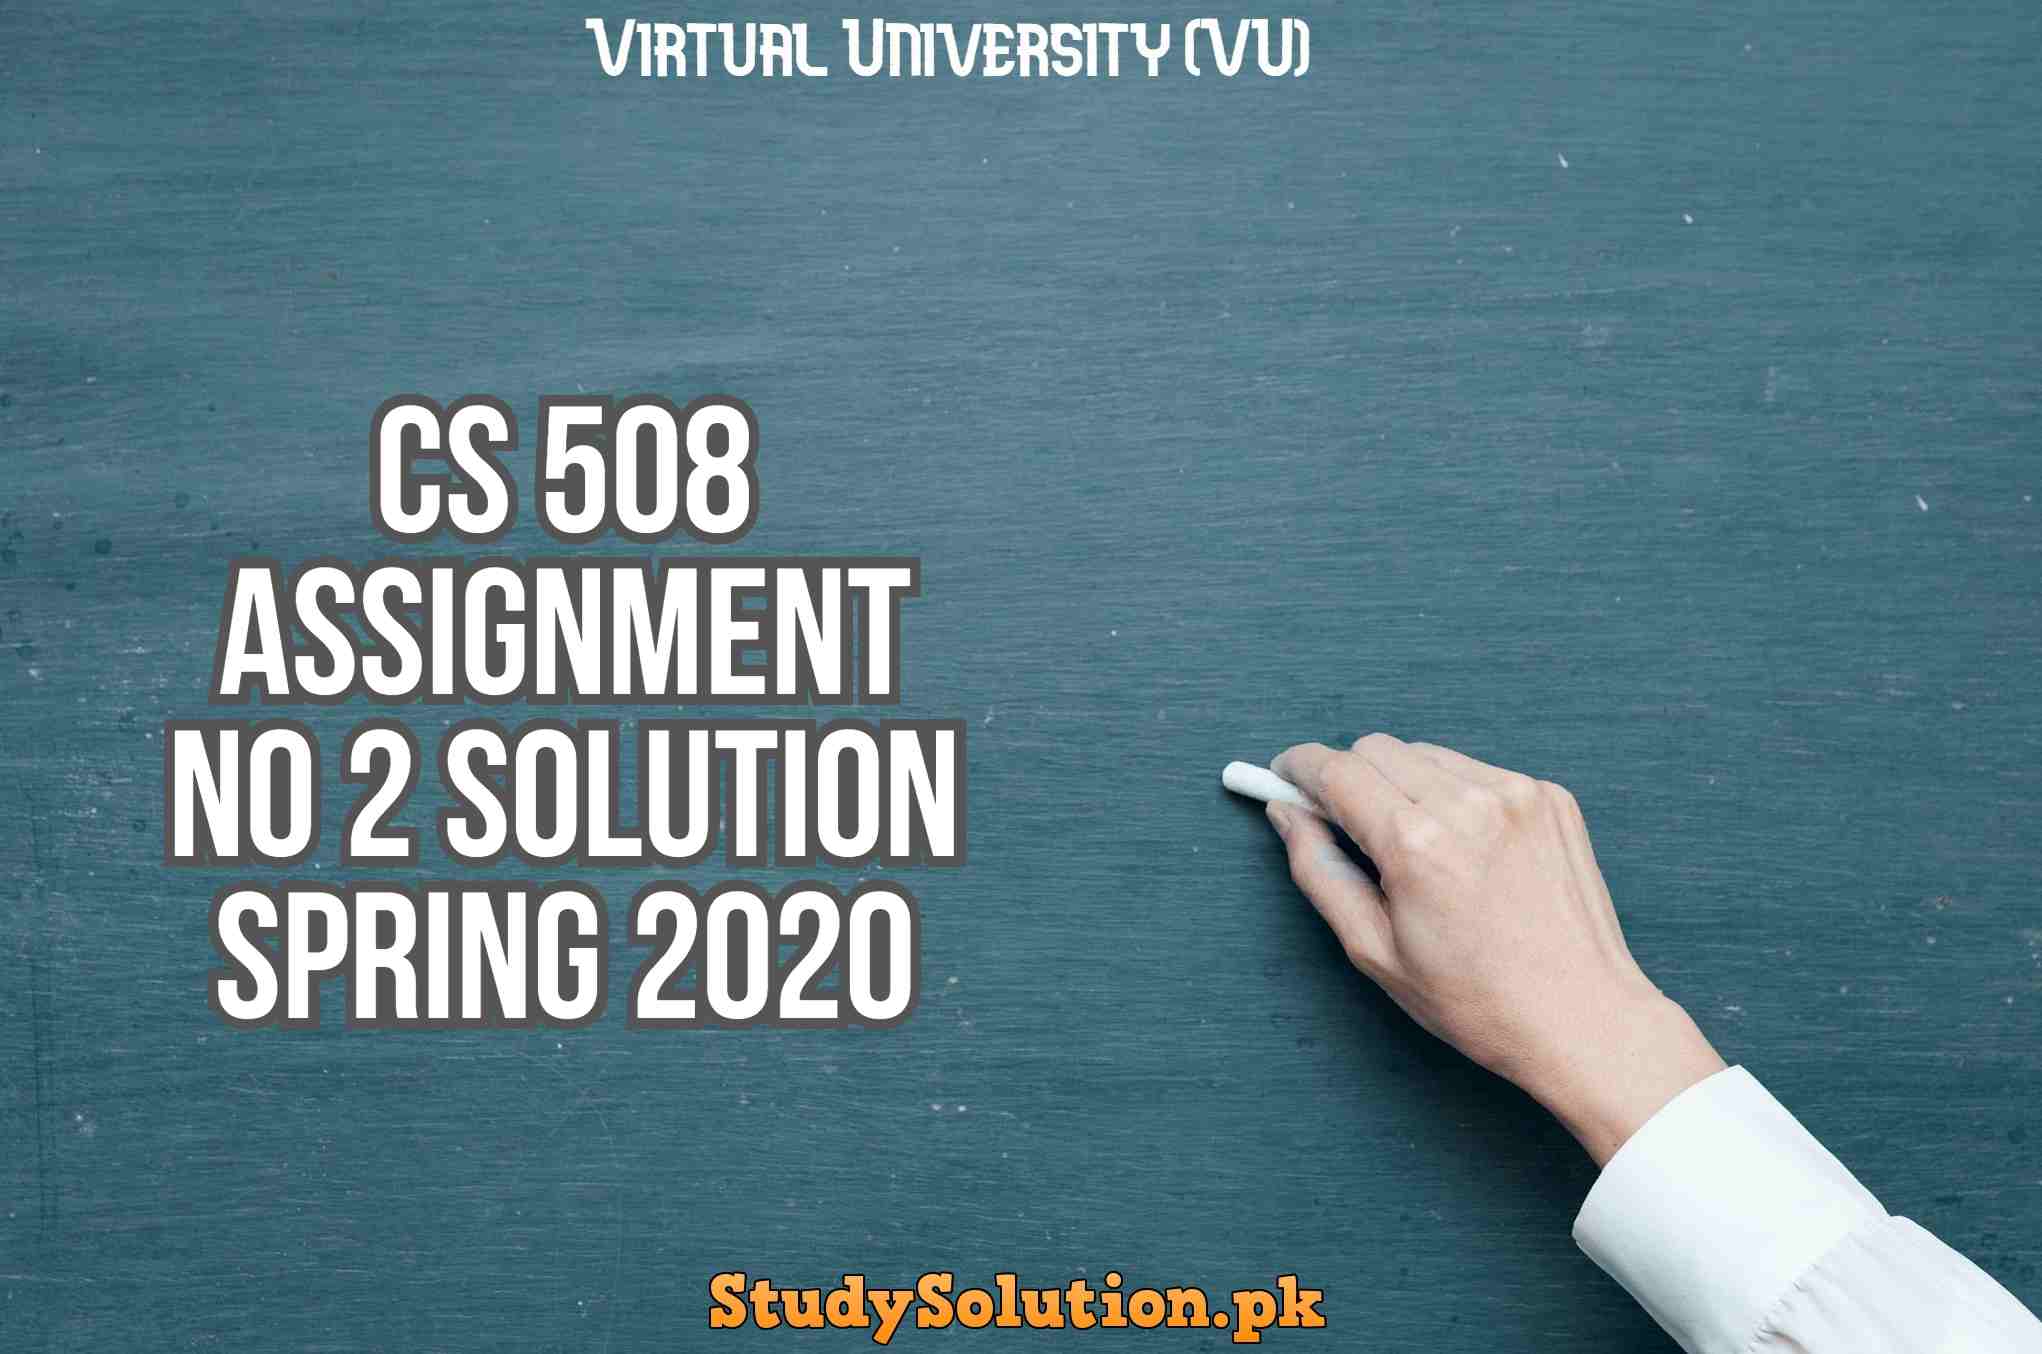 CS 508 Assignment No 2 Solution Spring 2020